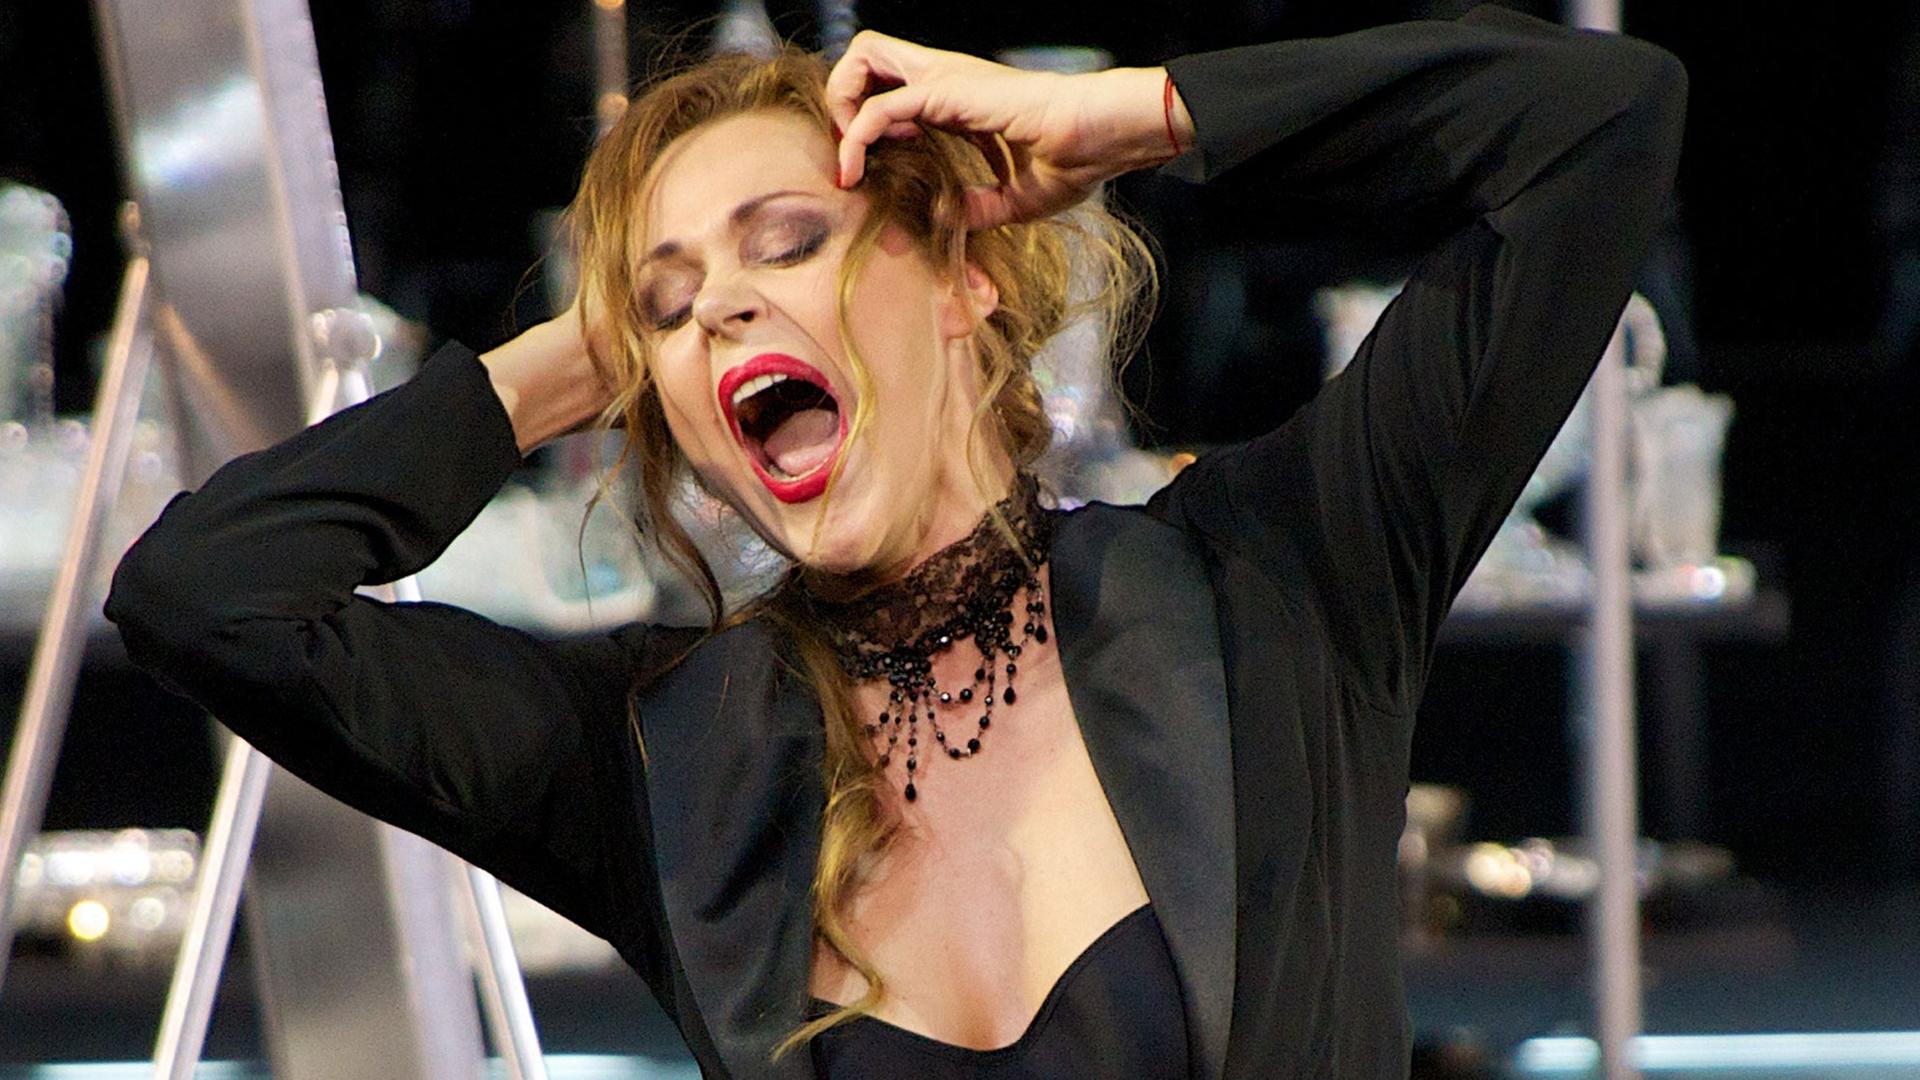 Die lettische Sopranistin Kristine Opolais singt die Titelpartie von Giacomo Puccinis Oper "Manon Lescaut" in der Bayerischen Staatsoper in München.